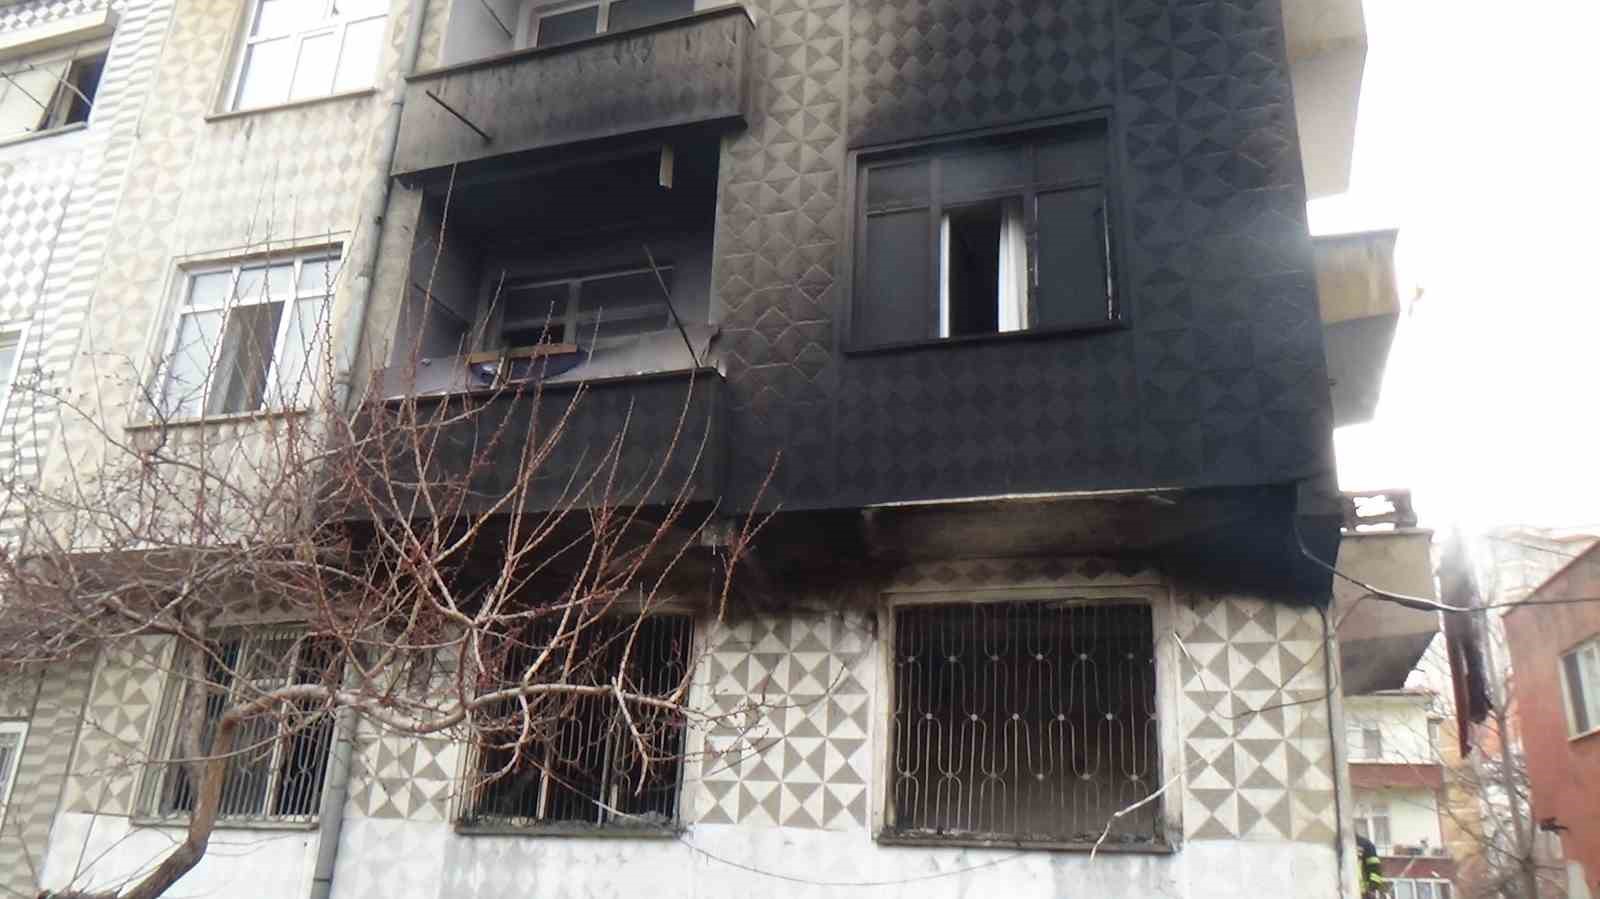 3 katlı binada çıkan yangın korkuttu
